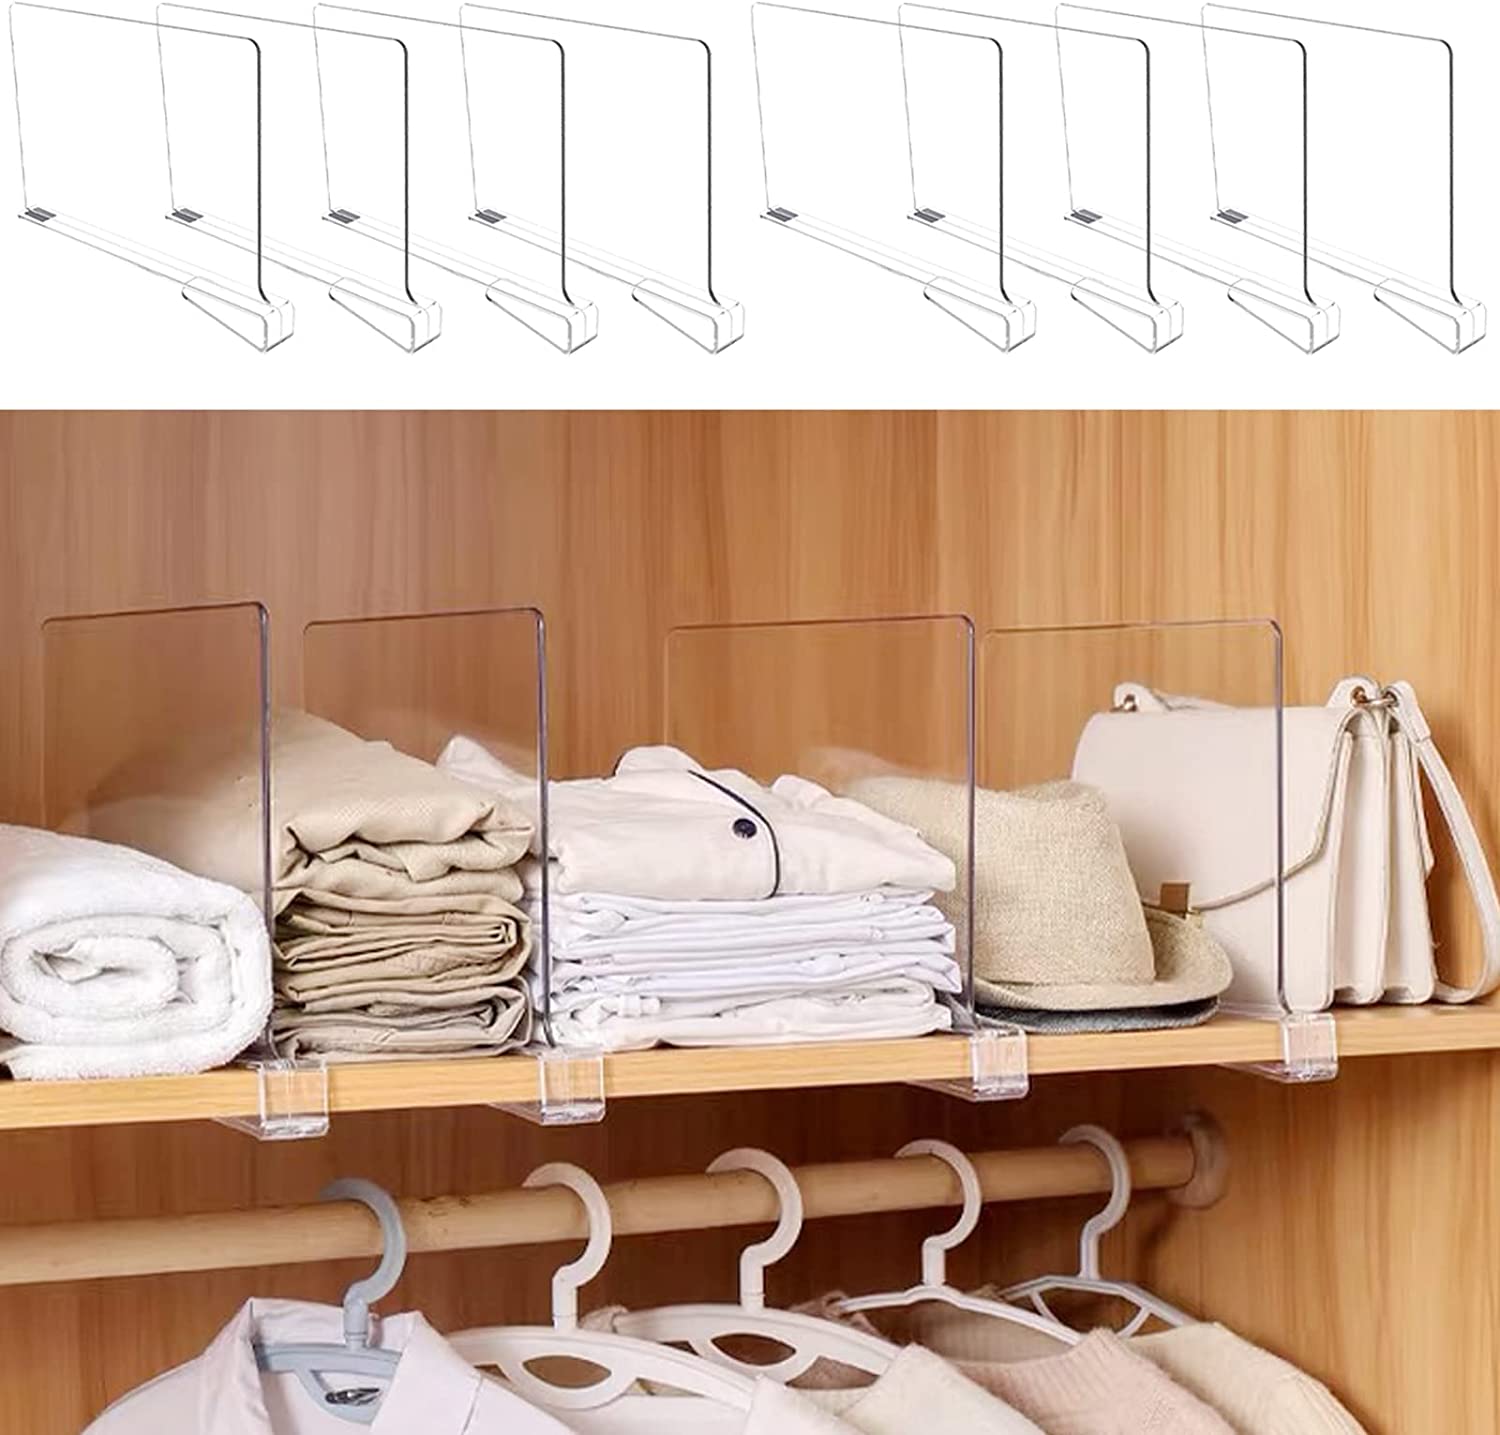 How to organize an underwear drawer: 10 genius ways